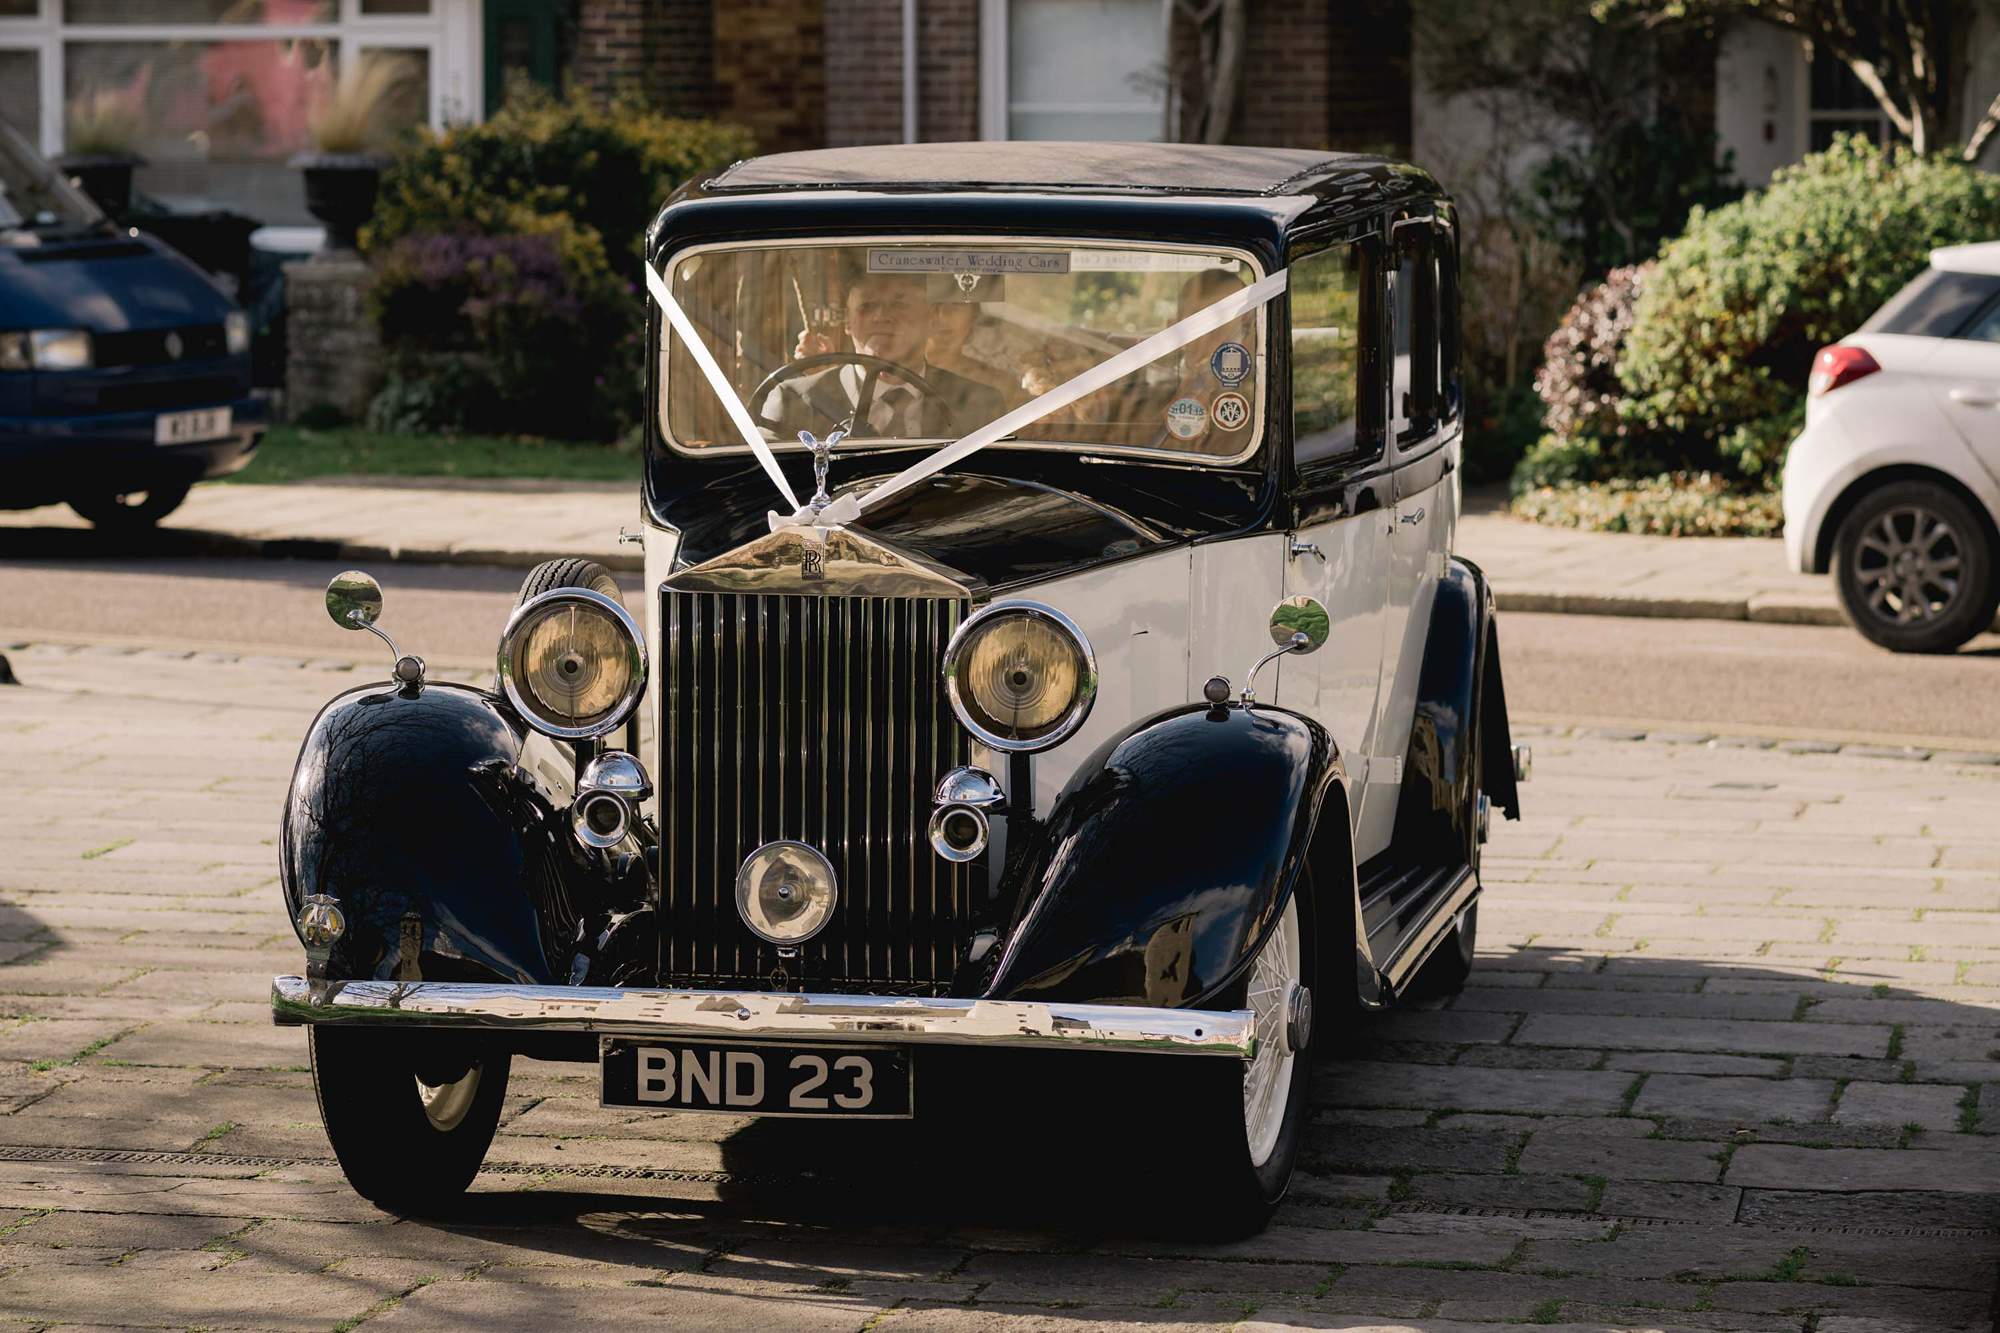 Rolls Royce car arriving for a wedding.